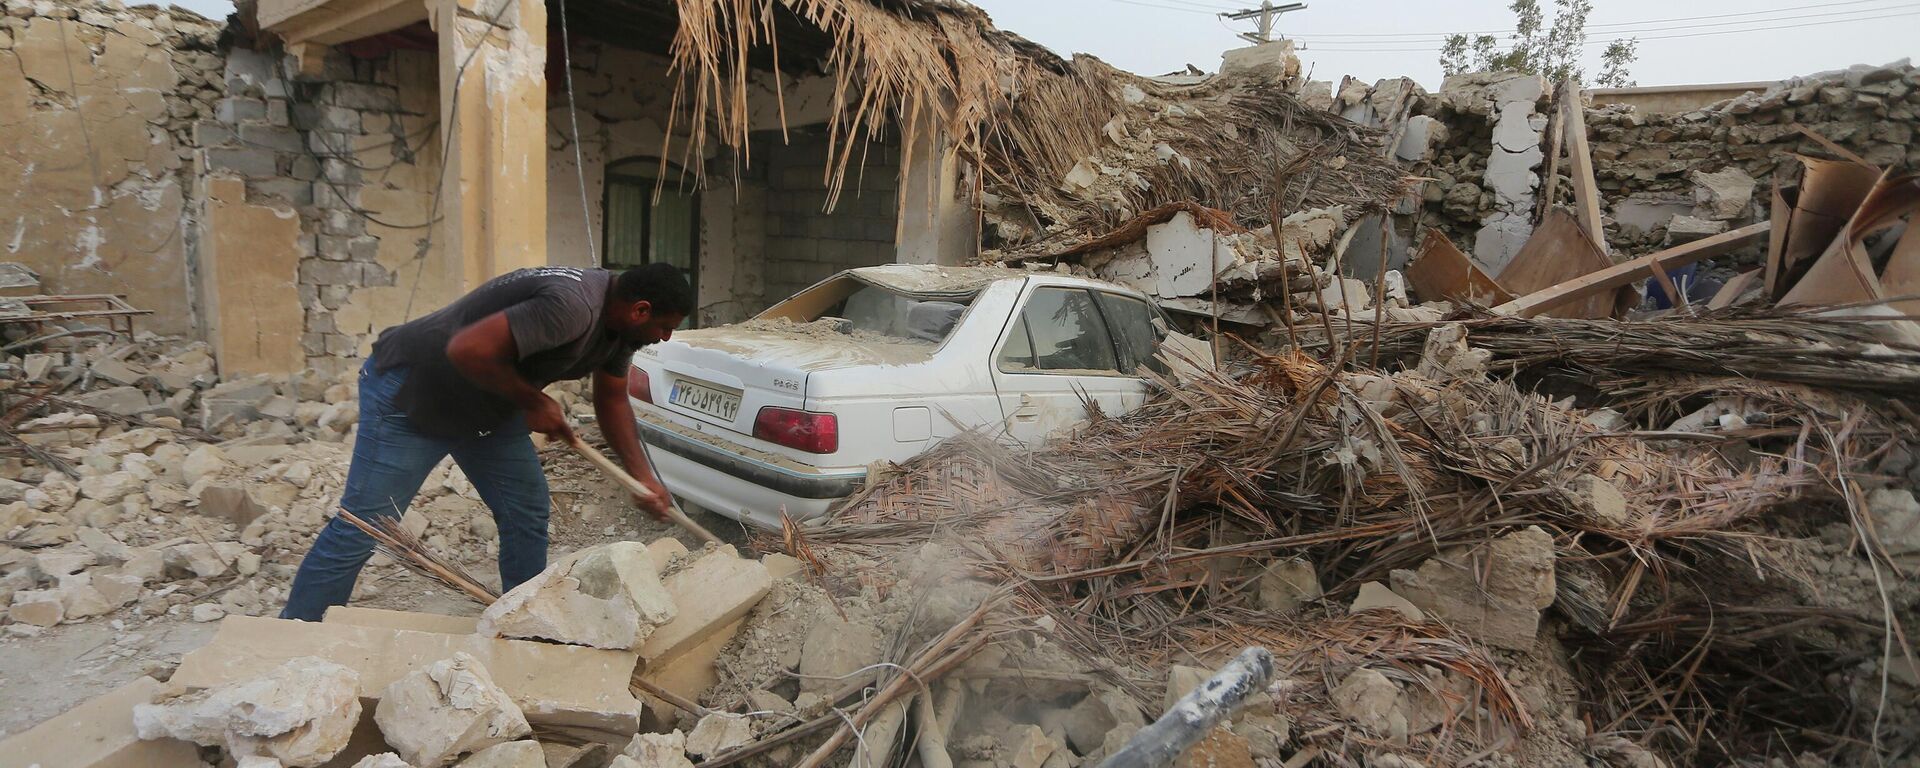 تداعيات زلزال قوي ضرب محافظة هرمزغان جنوب إيران، 2 يوليو 2022 - سبوتنيك عربي, 1920, 28.01.2023